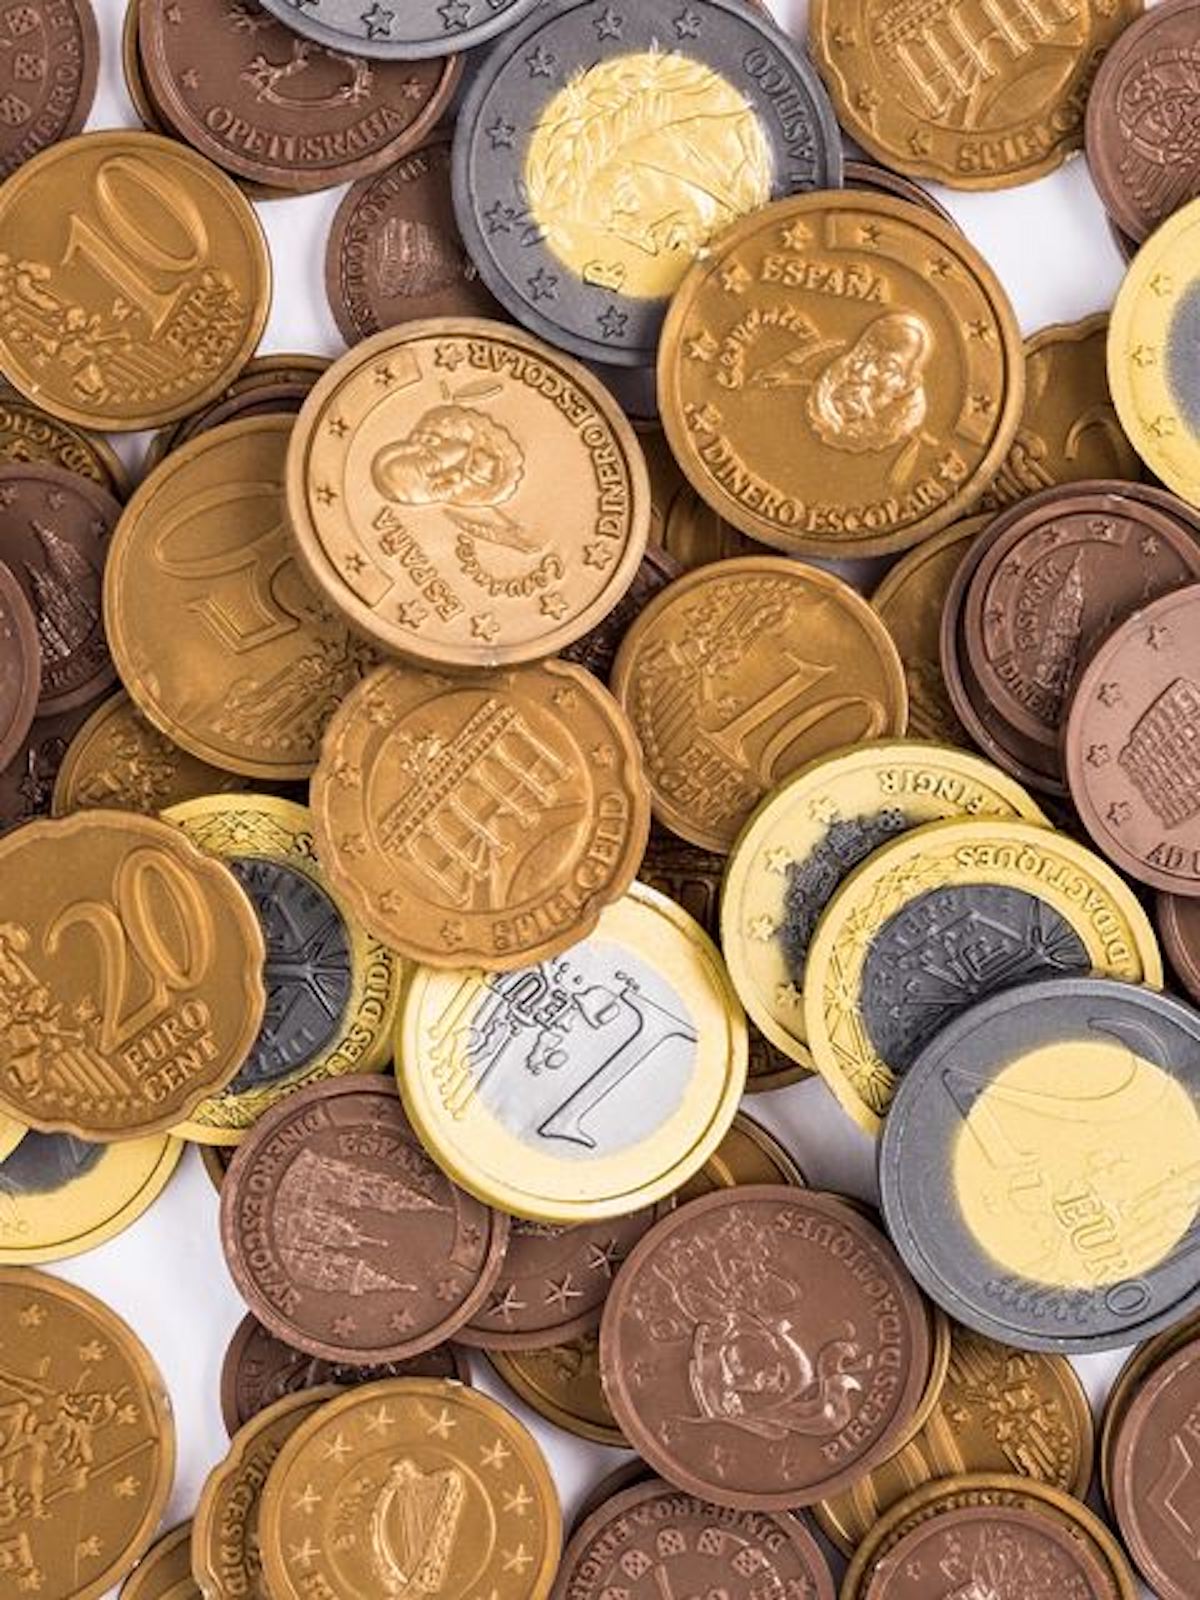 Moneta da 2 euro